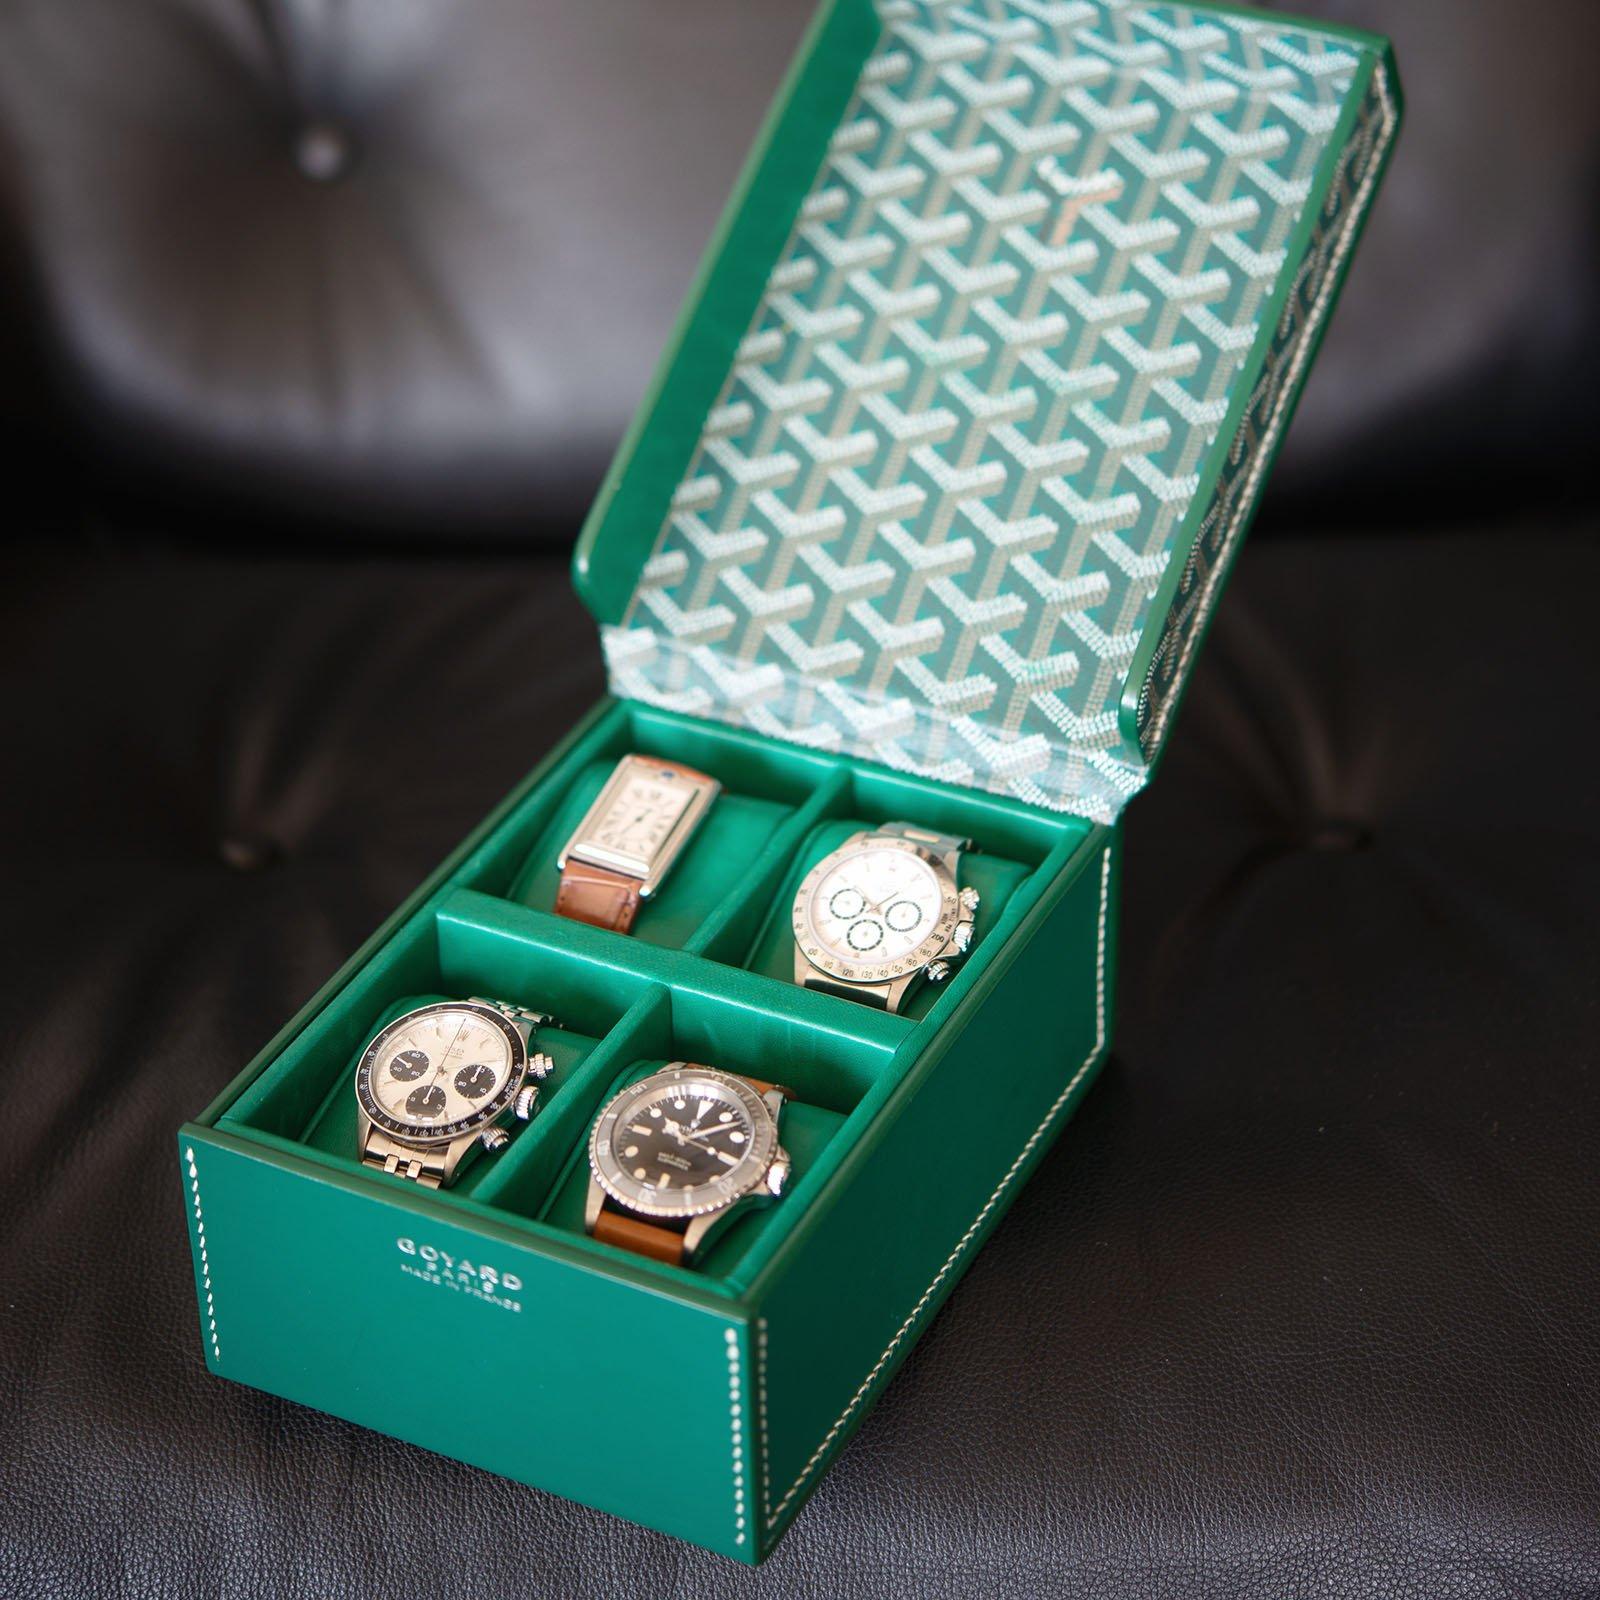 Goyard Goyard Coffret 4 Watch Box